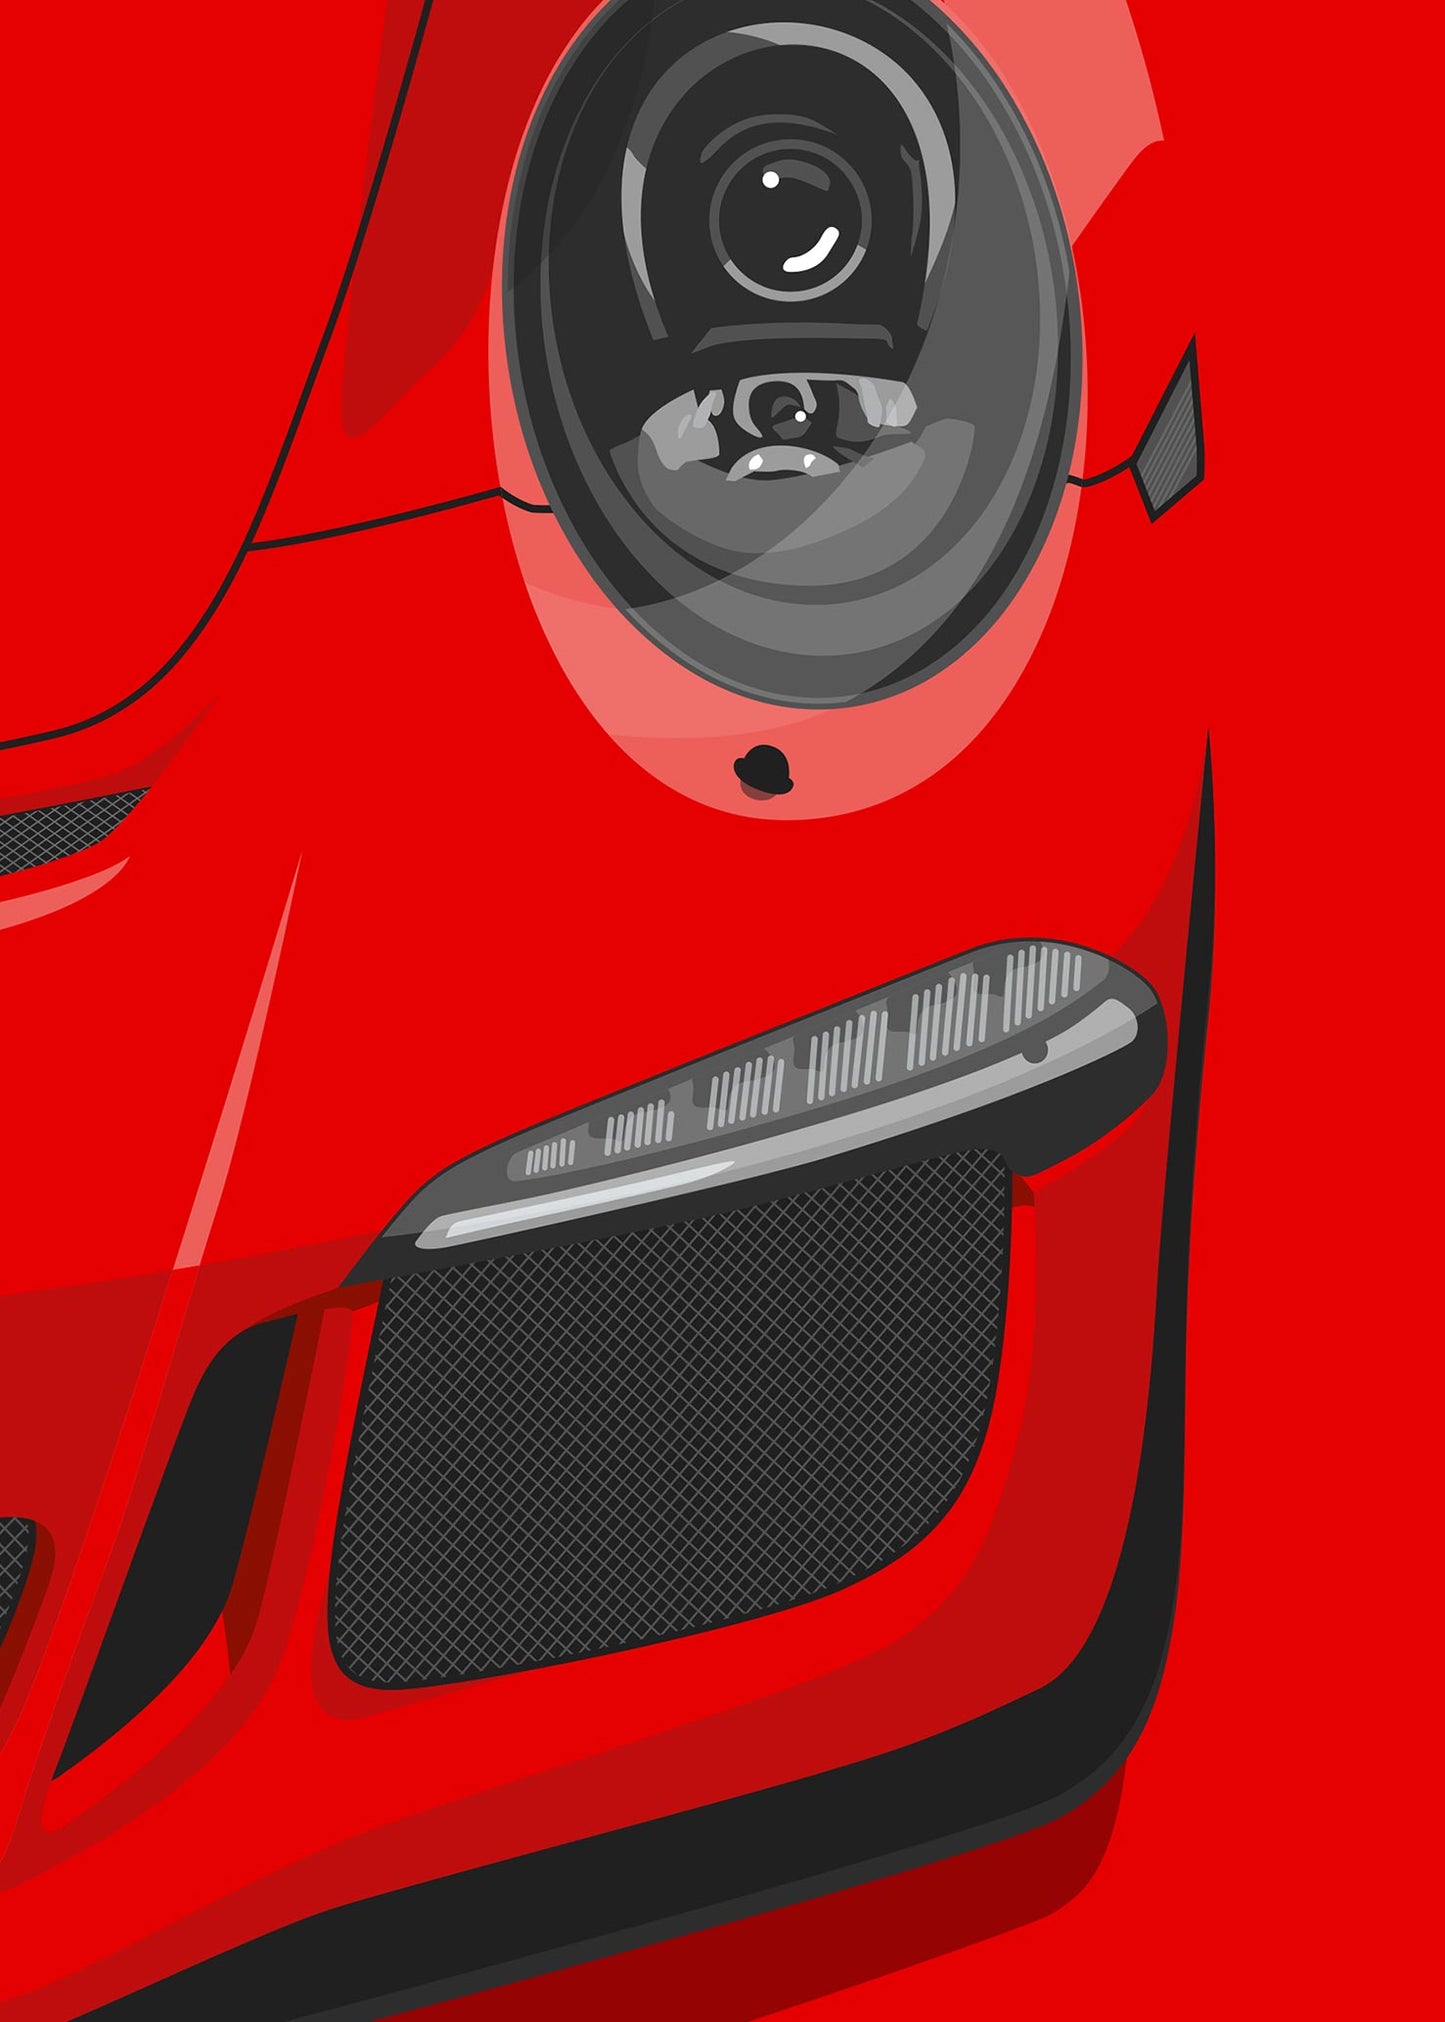 2013 Porsche 911 (991.1) GT3 Guards Red - poster print